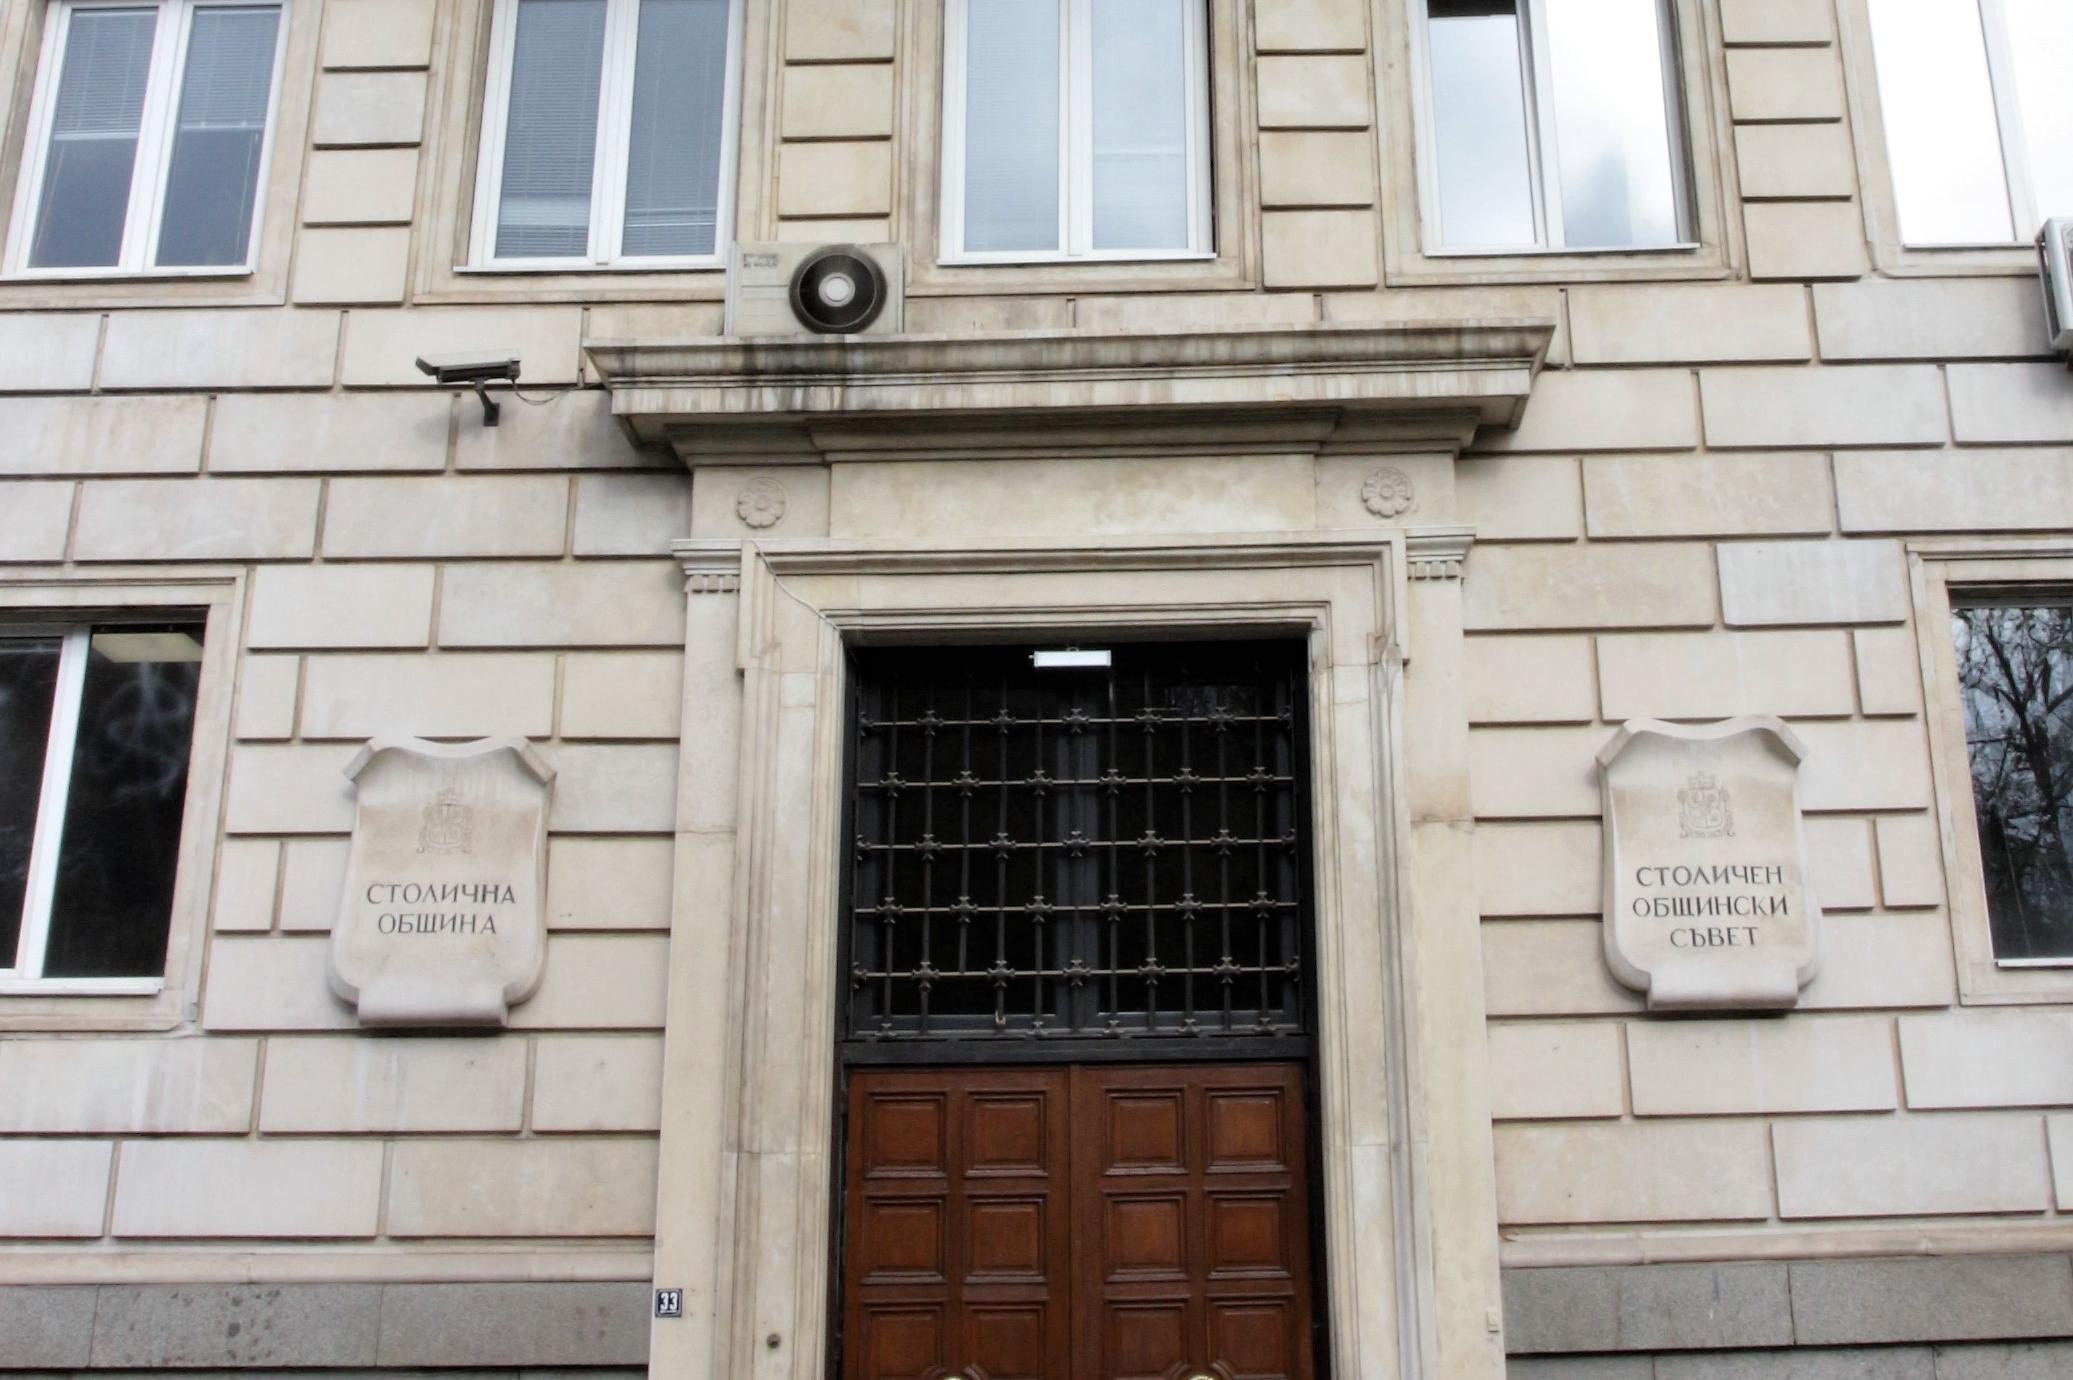 Софийски имоти спечели делото за терена на Капитолия, но едва ли ще им върн